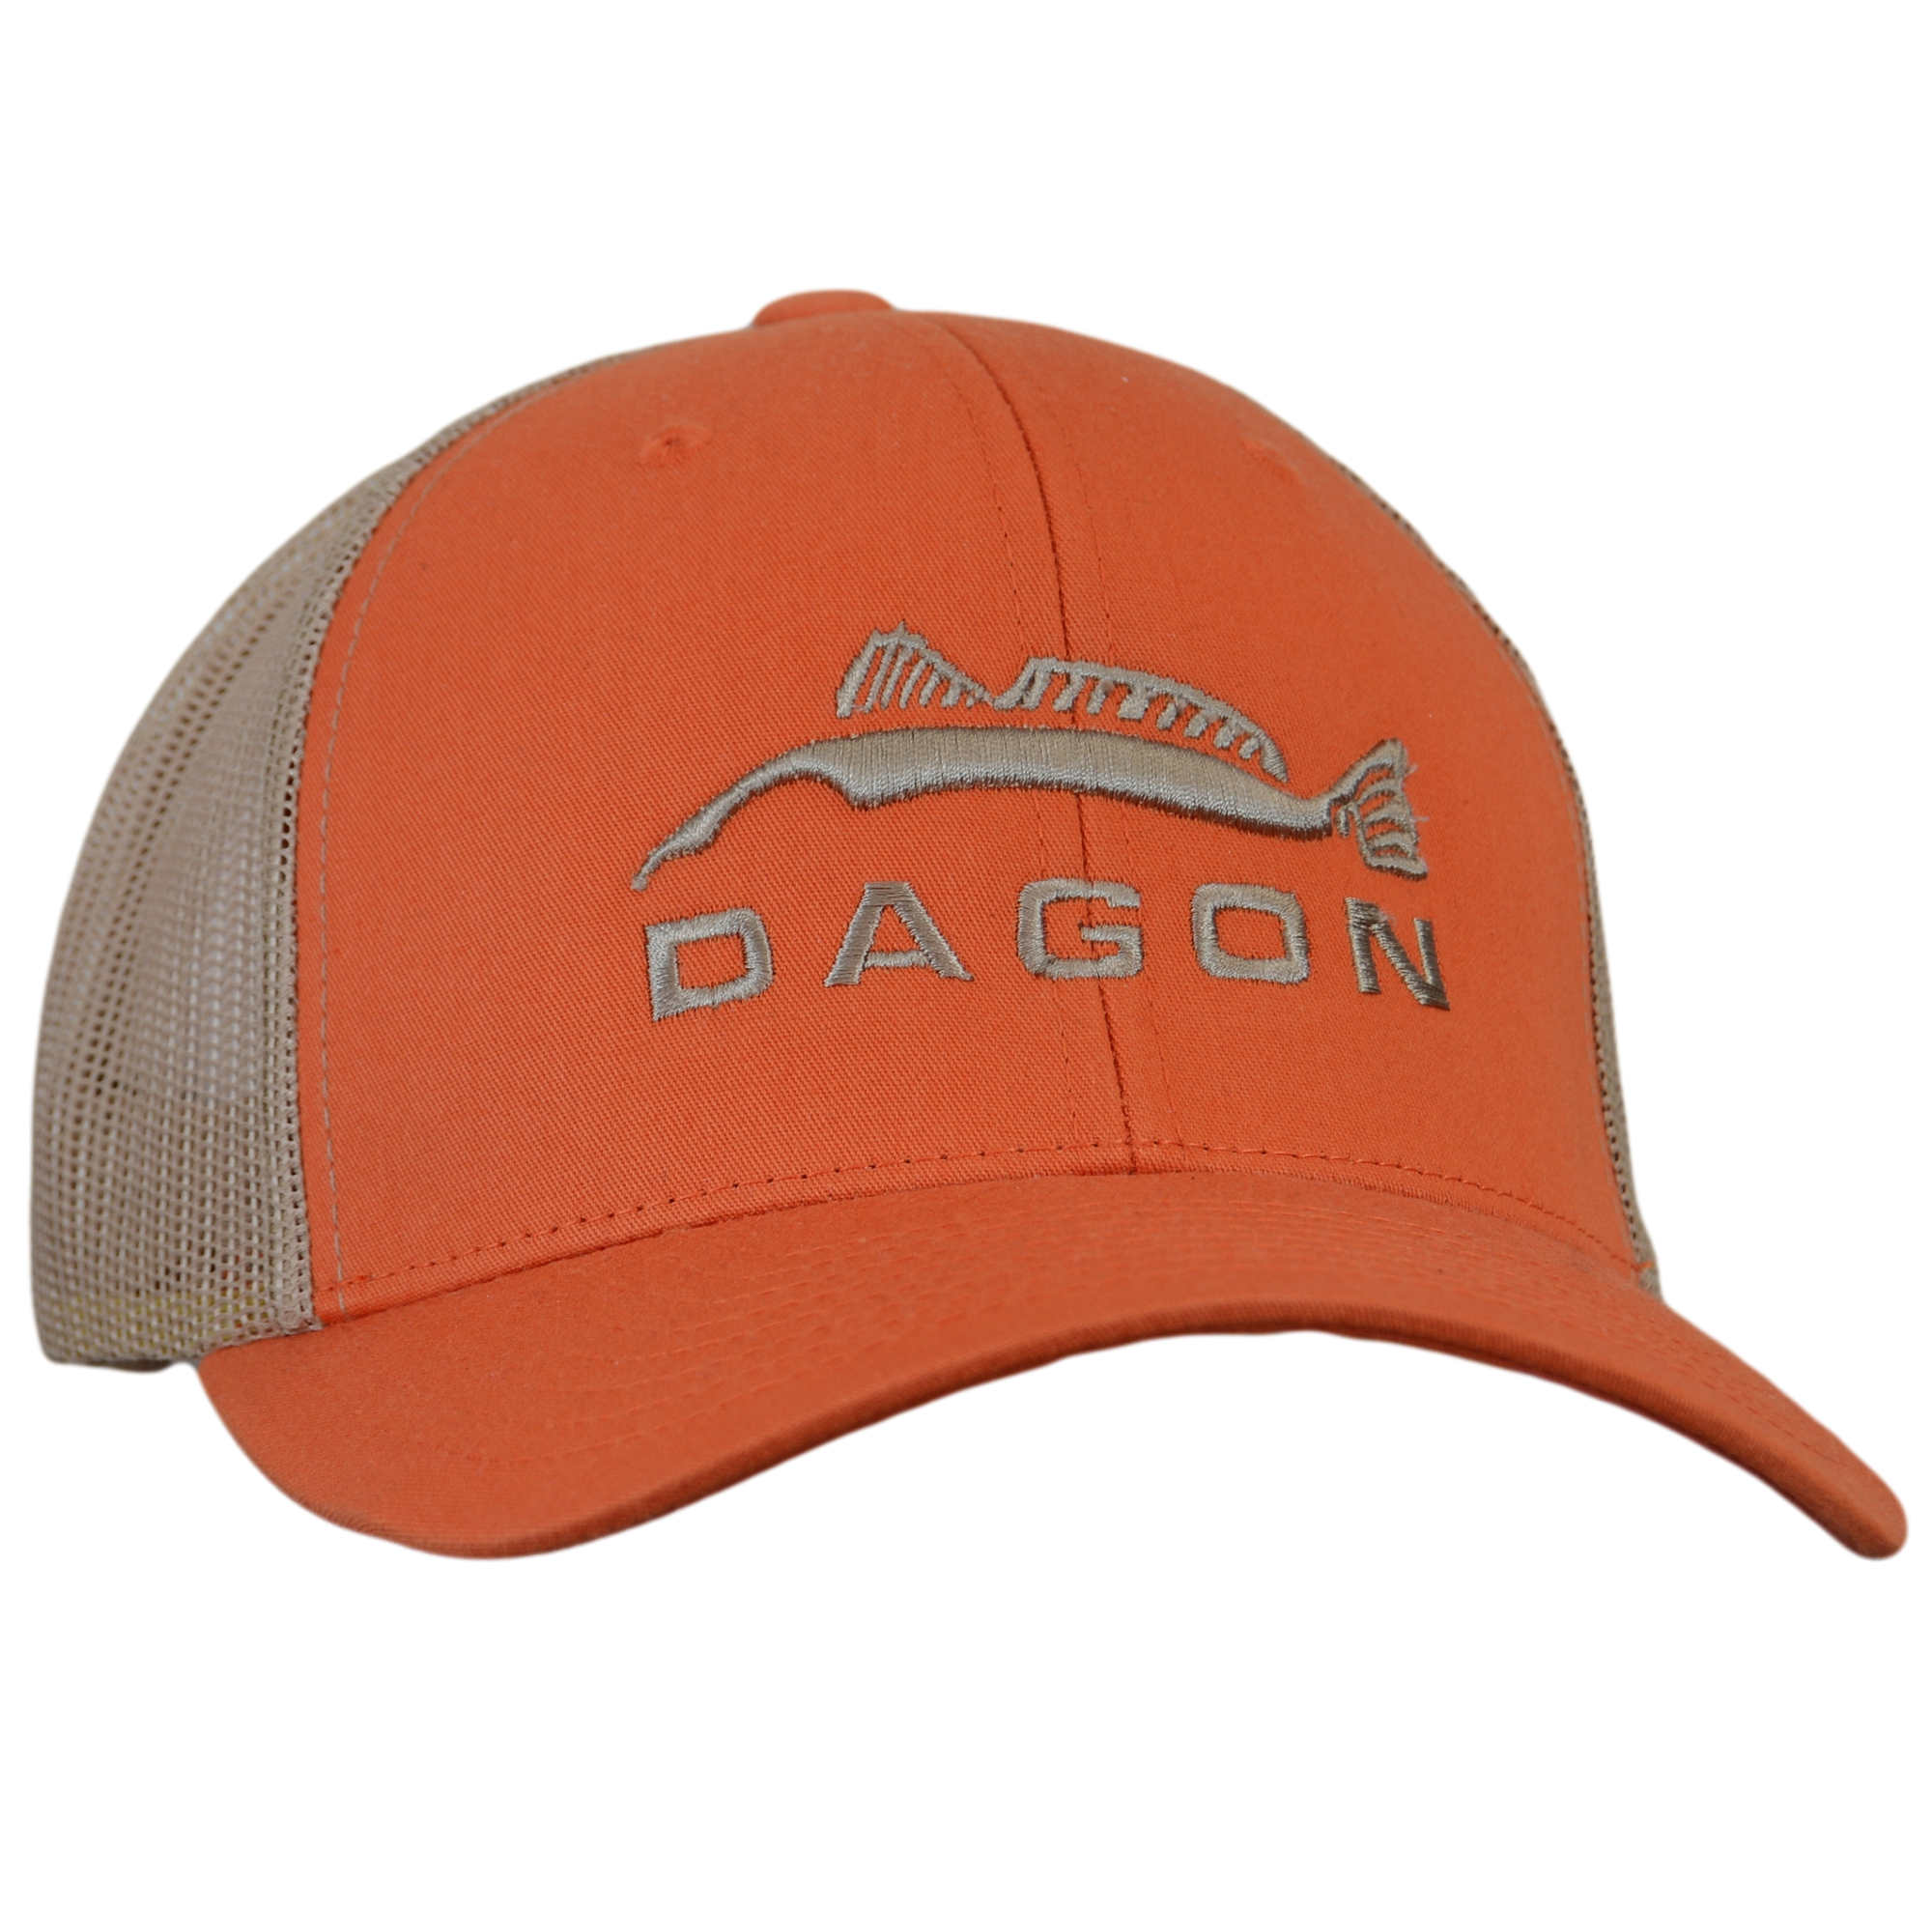 Embroidered Trucker Hat- Orange/ Tan